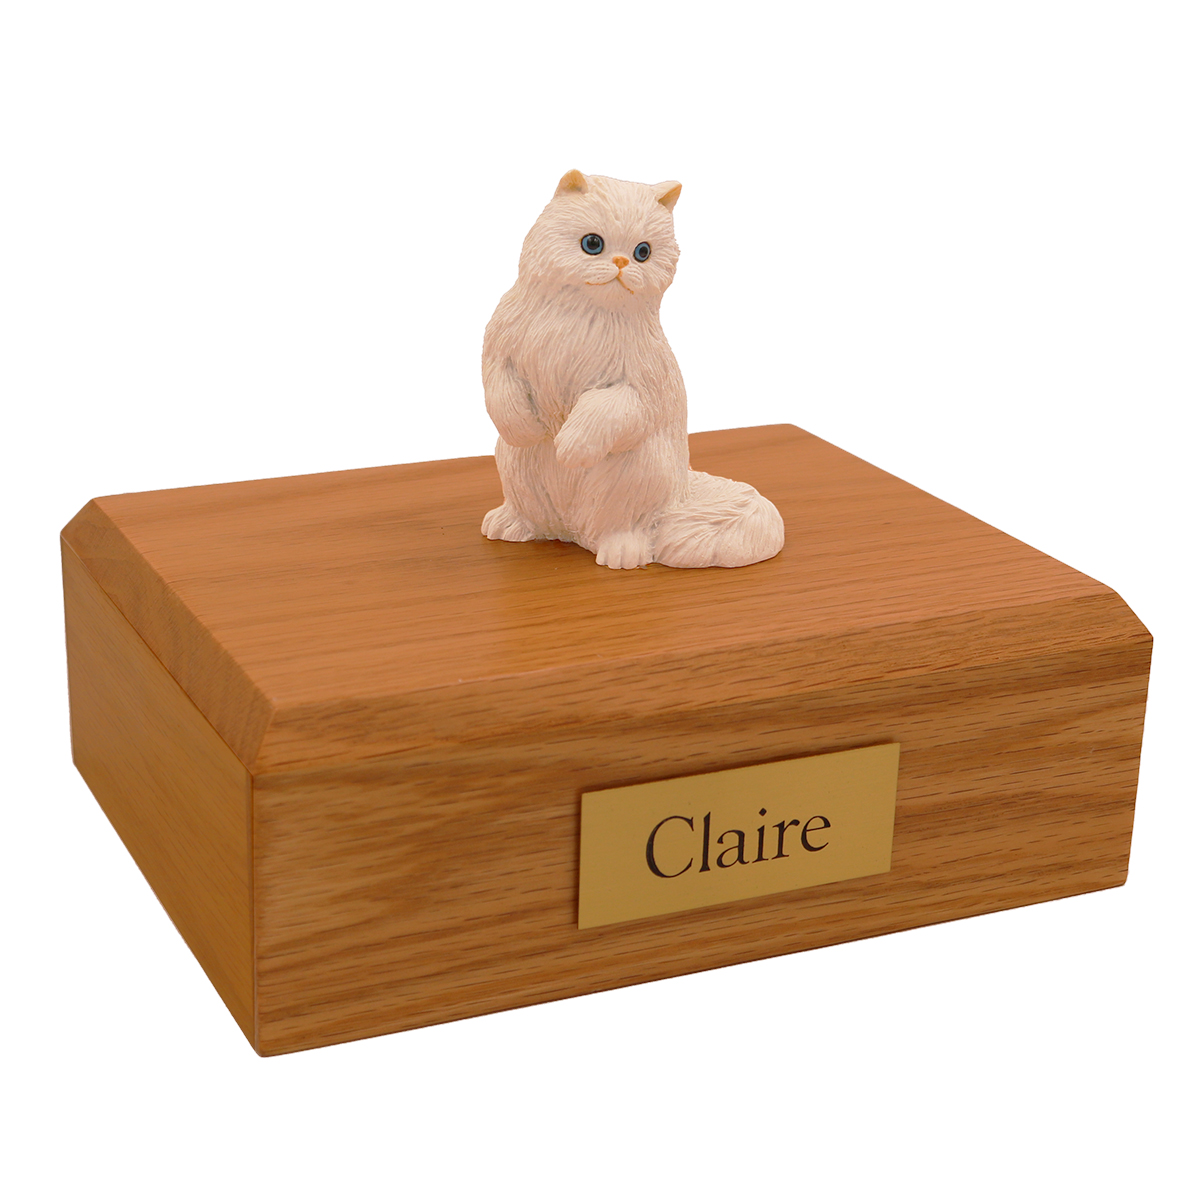 Cat, Persian, White - Figurine Urn